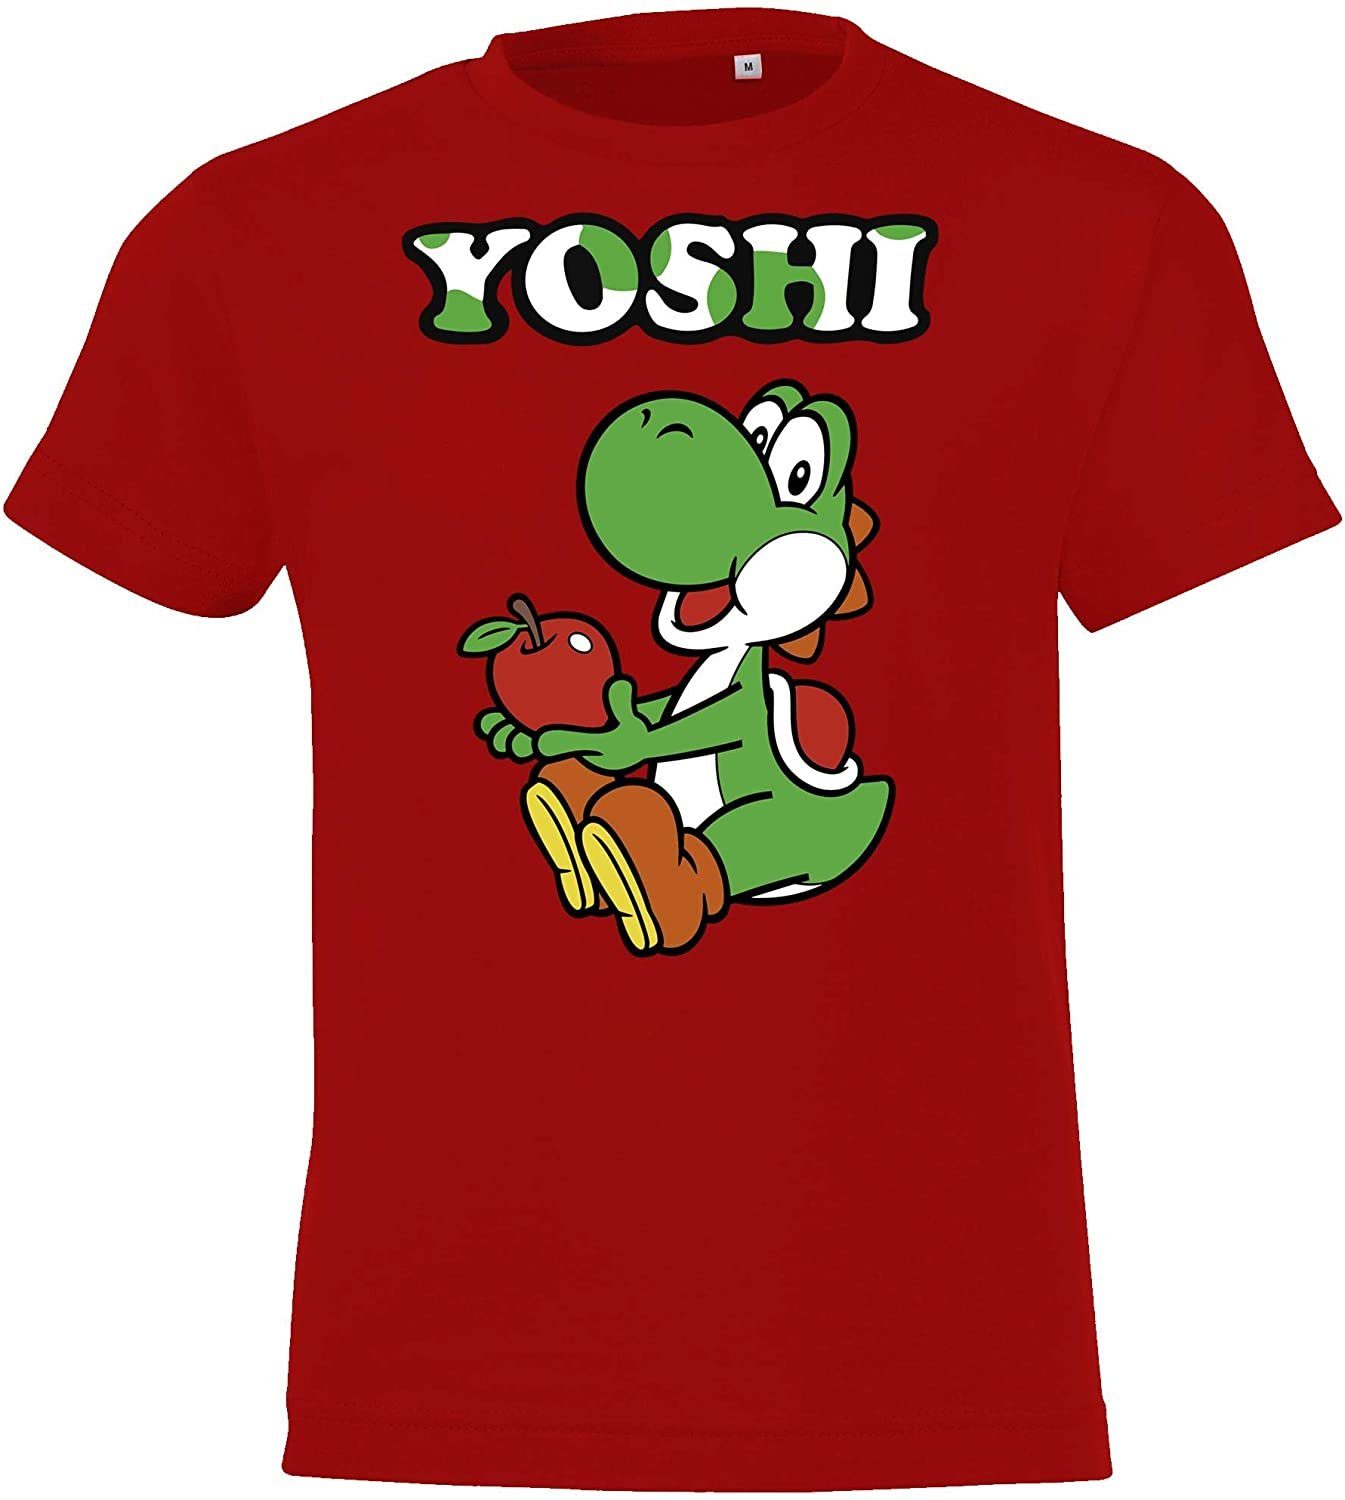 Rot Baby Front Jungen T-Shirt Kinder Youth T-Shirt Mädchen mit & Yoshi Designz trendigem Print für